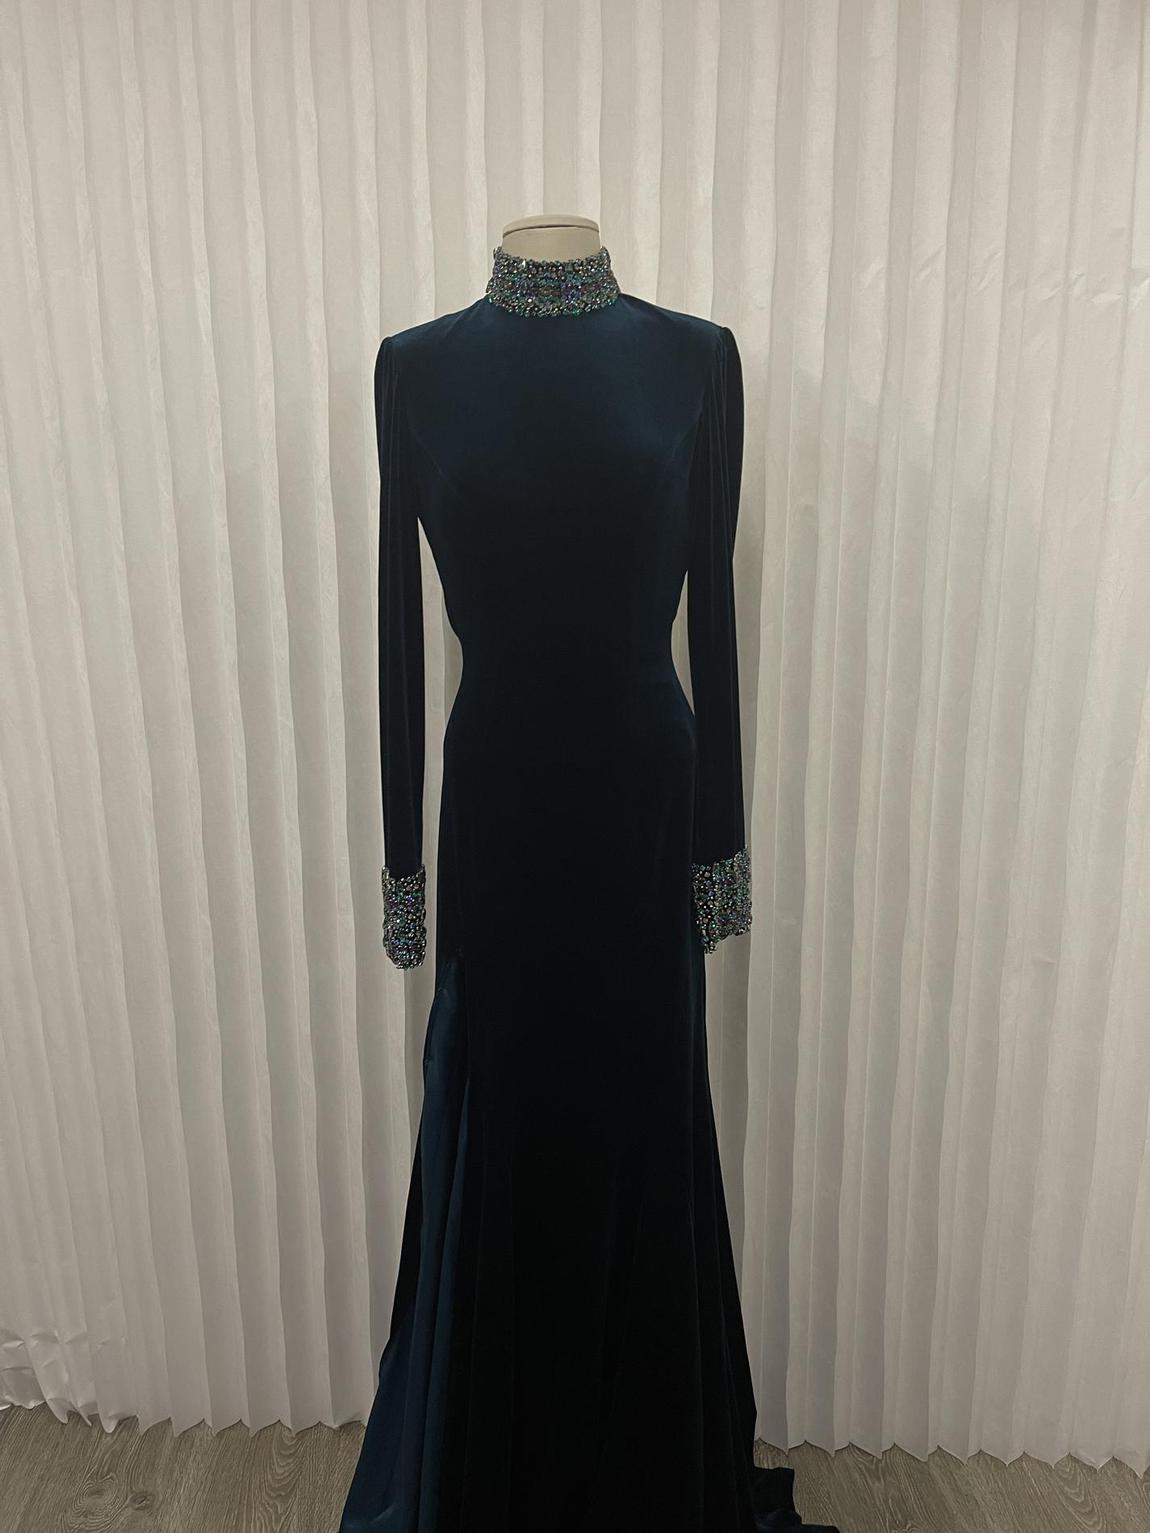 Jovani Size 6 Prom Velvet Royal Blue Side Slit Dress on Queenly